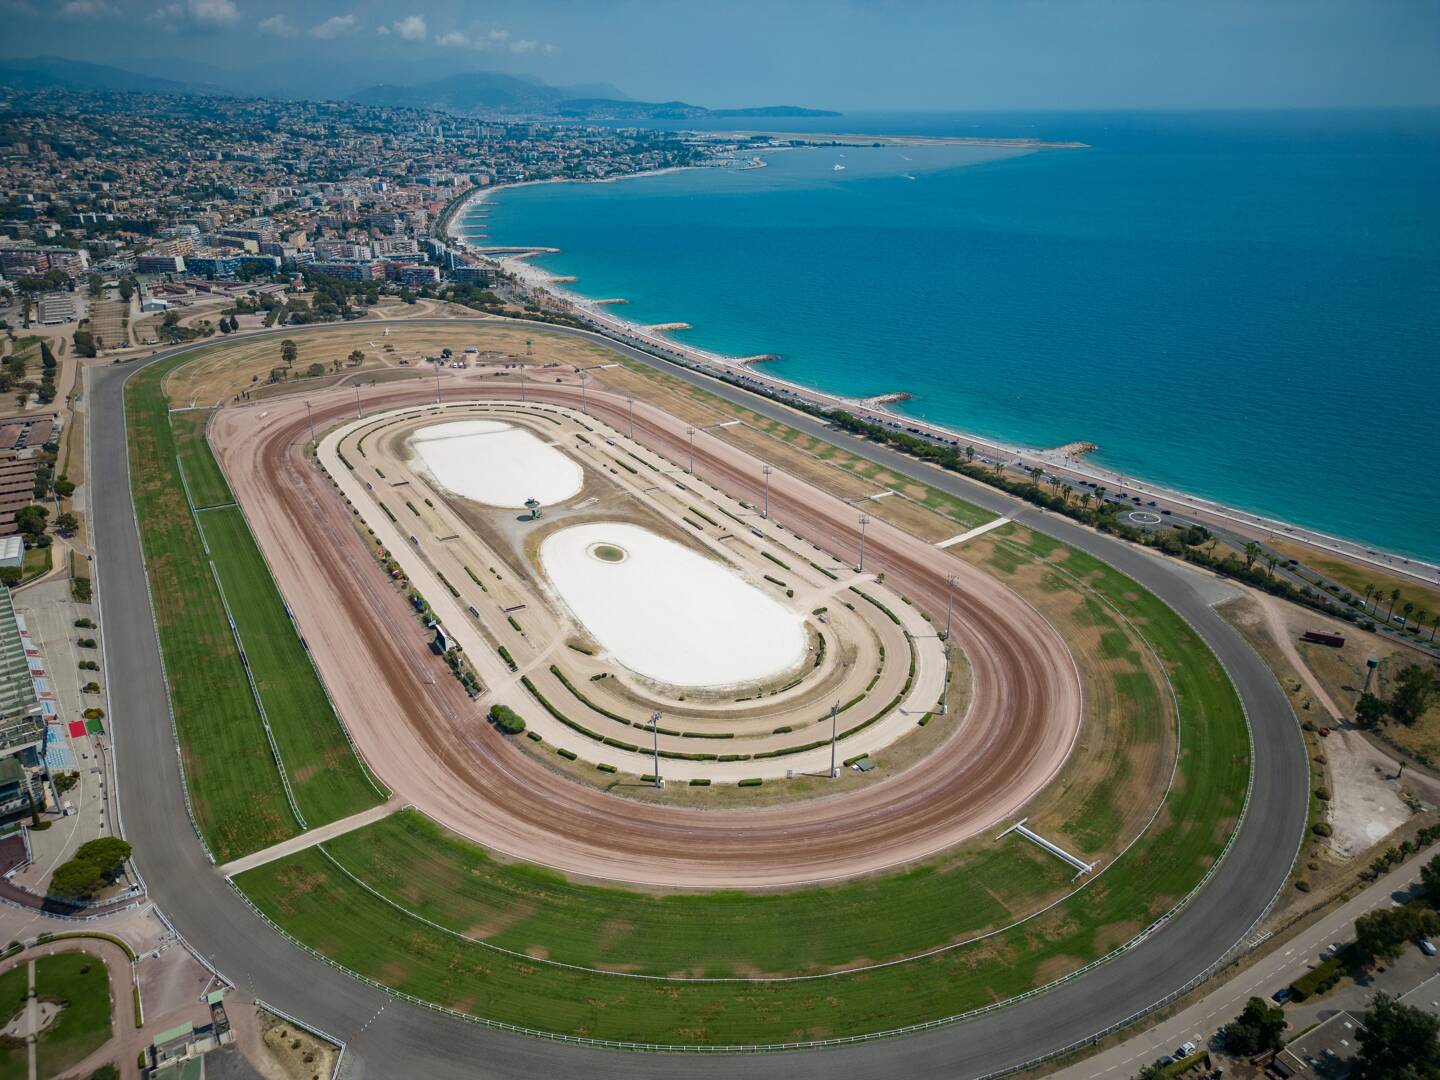 Dès le début du printemps jusqu’à la fin août, l’hippodrome de la Côte d’Azur n’arrose plus ses pistes en gazon afin d’économiser l’eau, comme ici en août 2022.
(Photo Sébastien Botella)